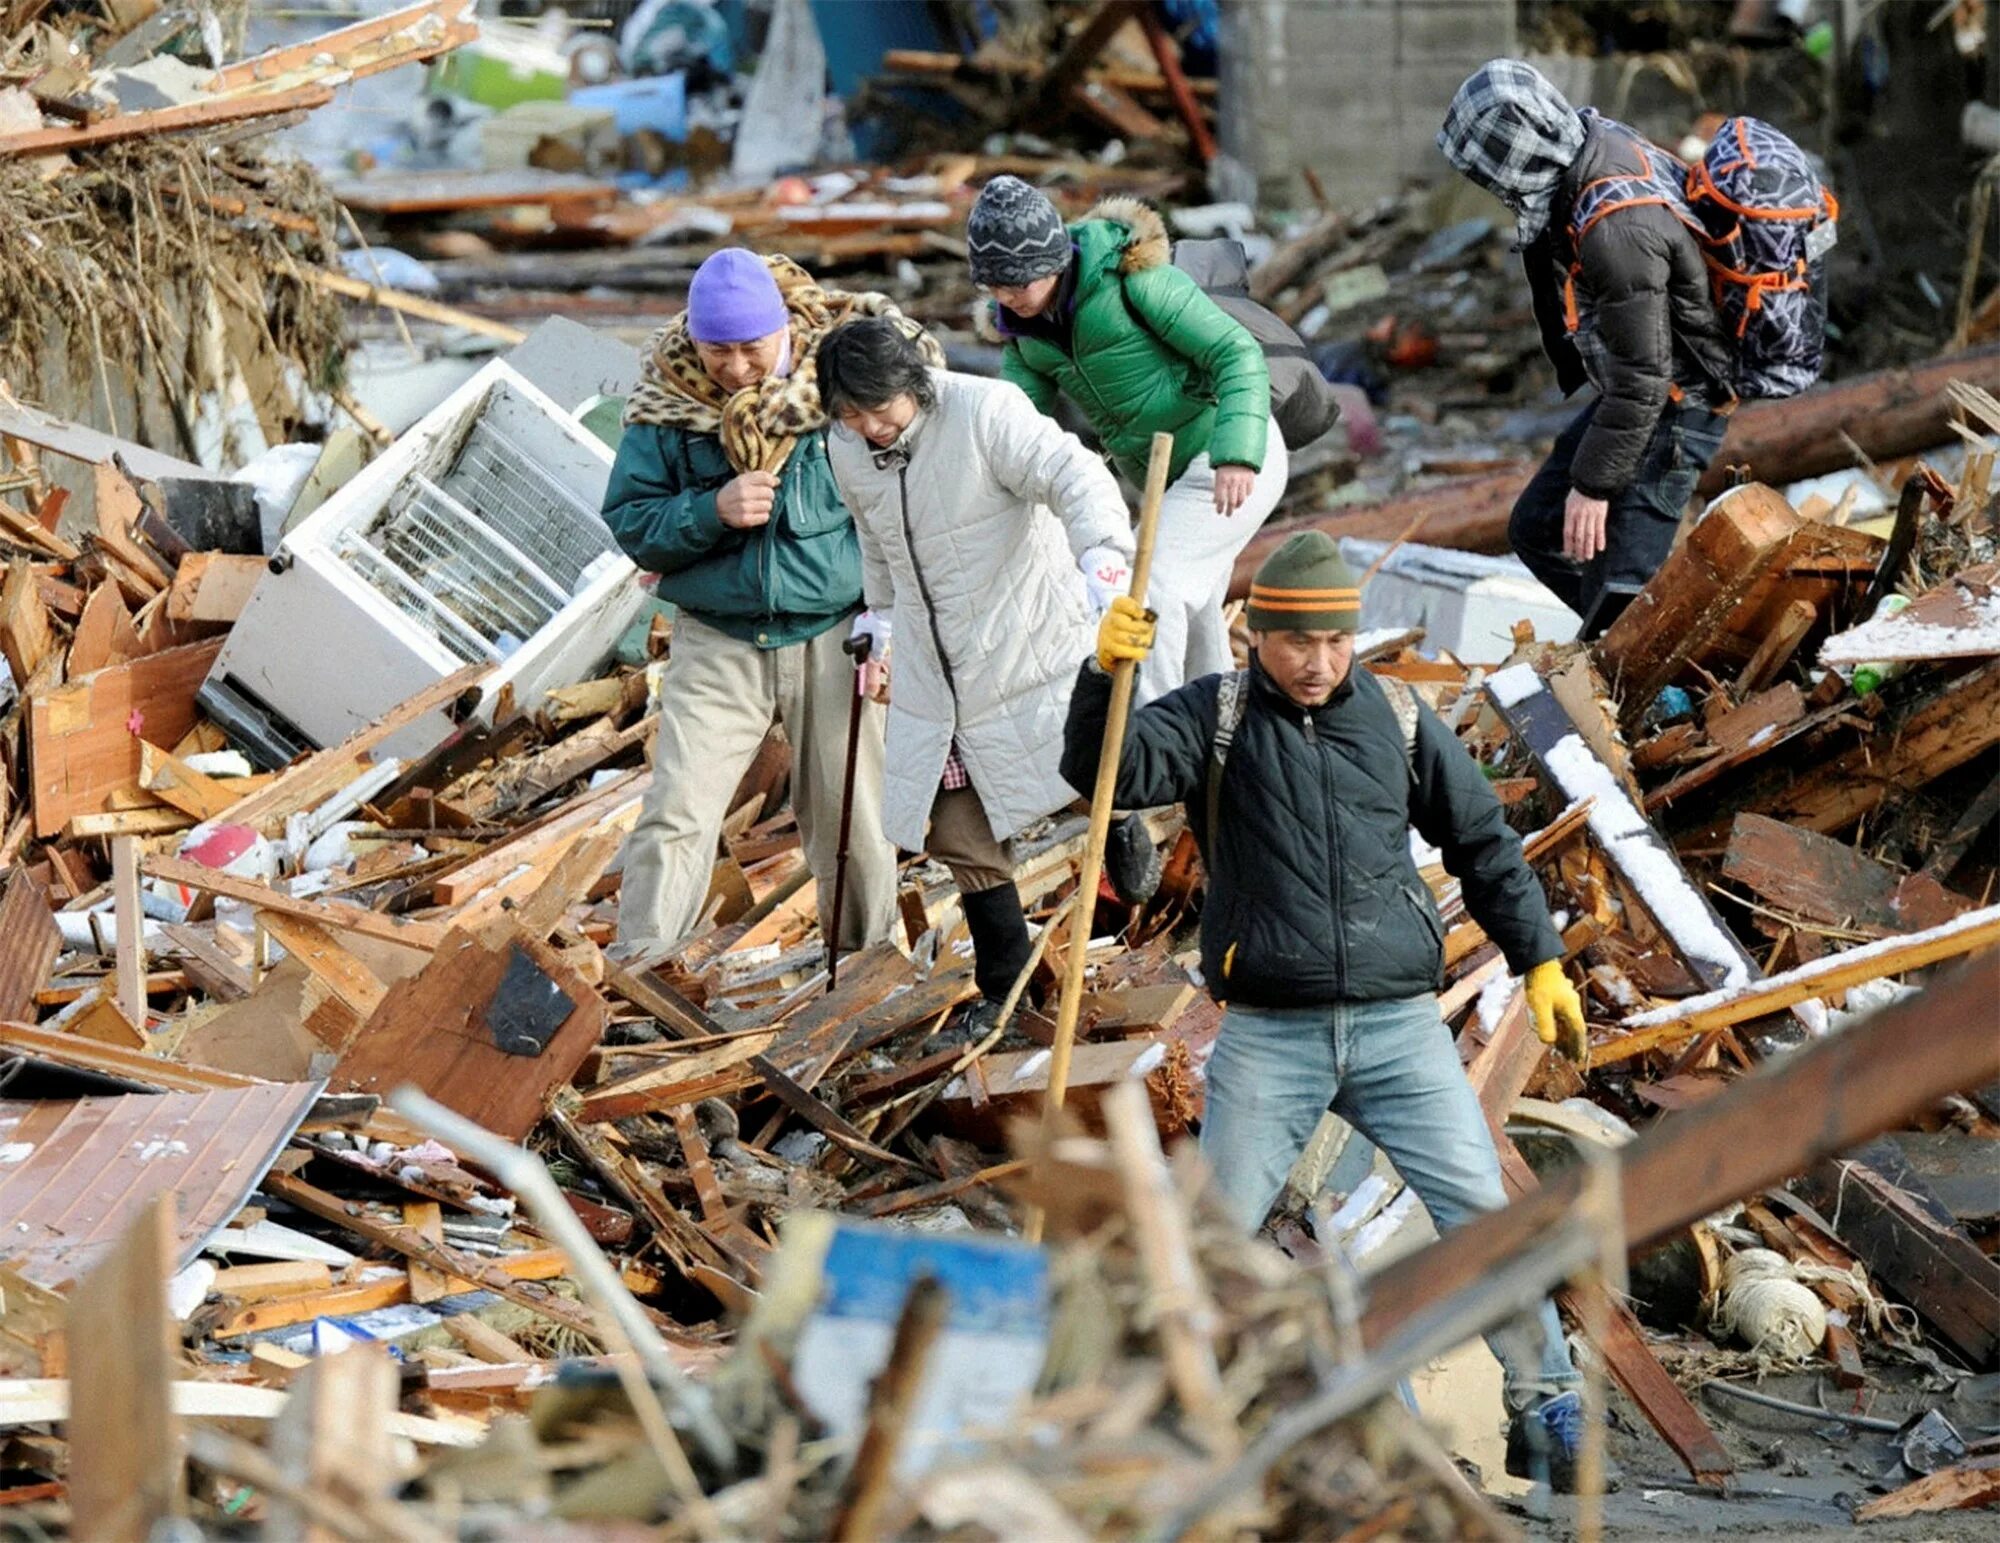 ЦУНАМИ 2011. Катастрофа в Японии 2011. ЦУНАМИ 2011 года в Японии. Землетрясение в Японии 2011.